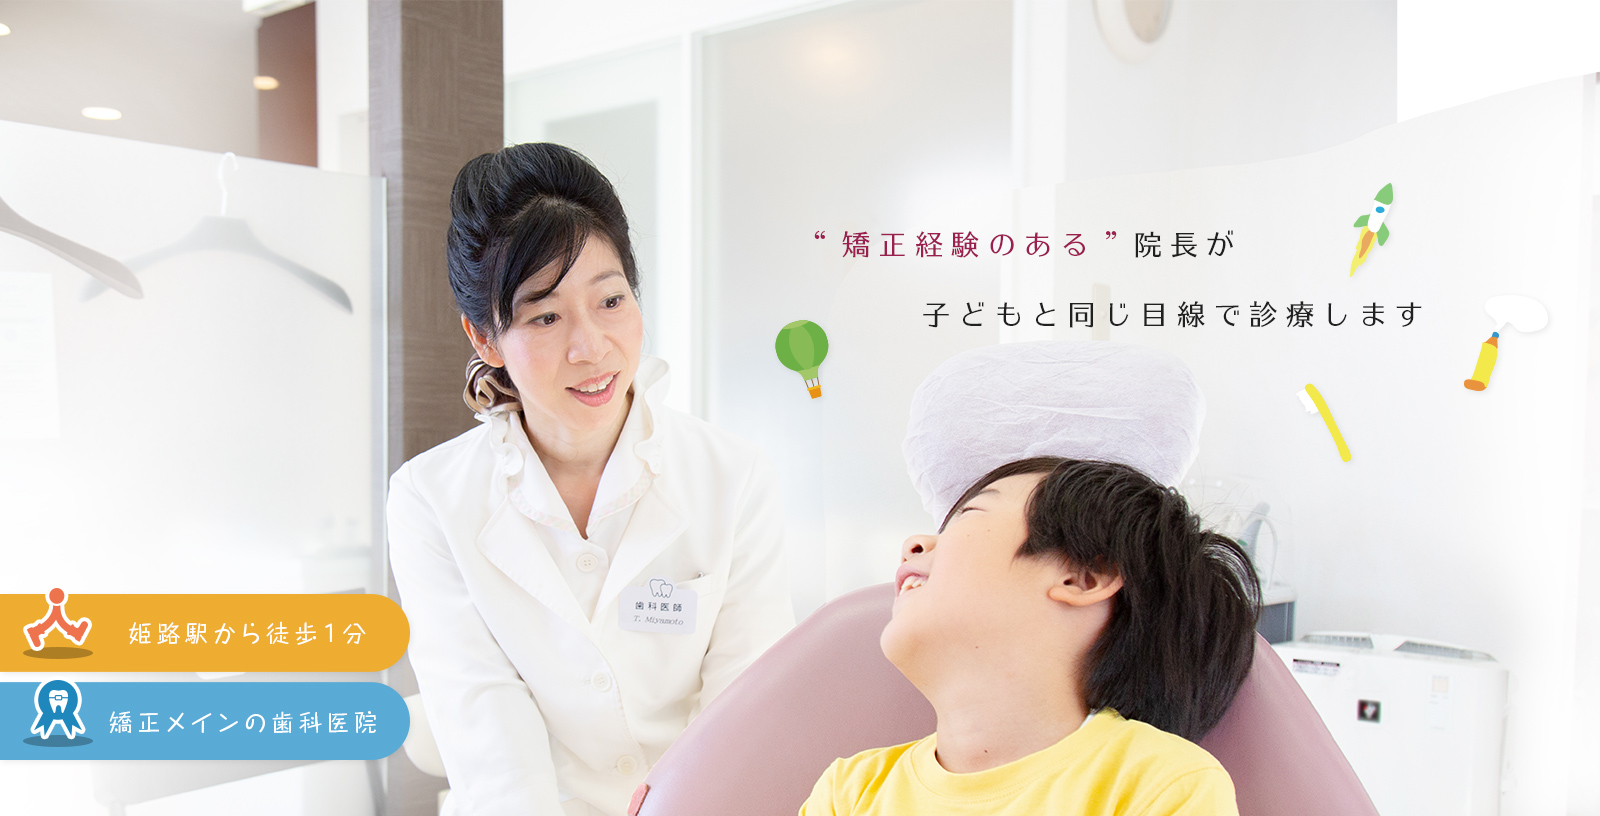 '矯正経験のある'院長が子どもと同じ目線で診療します 姫路駅から徒歩1分 矯正治療中心の歯科医院